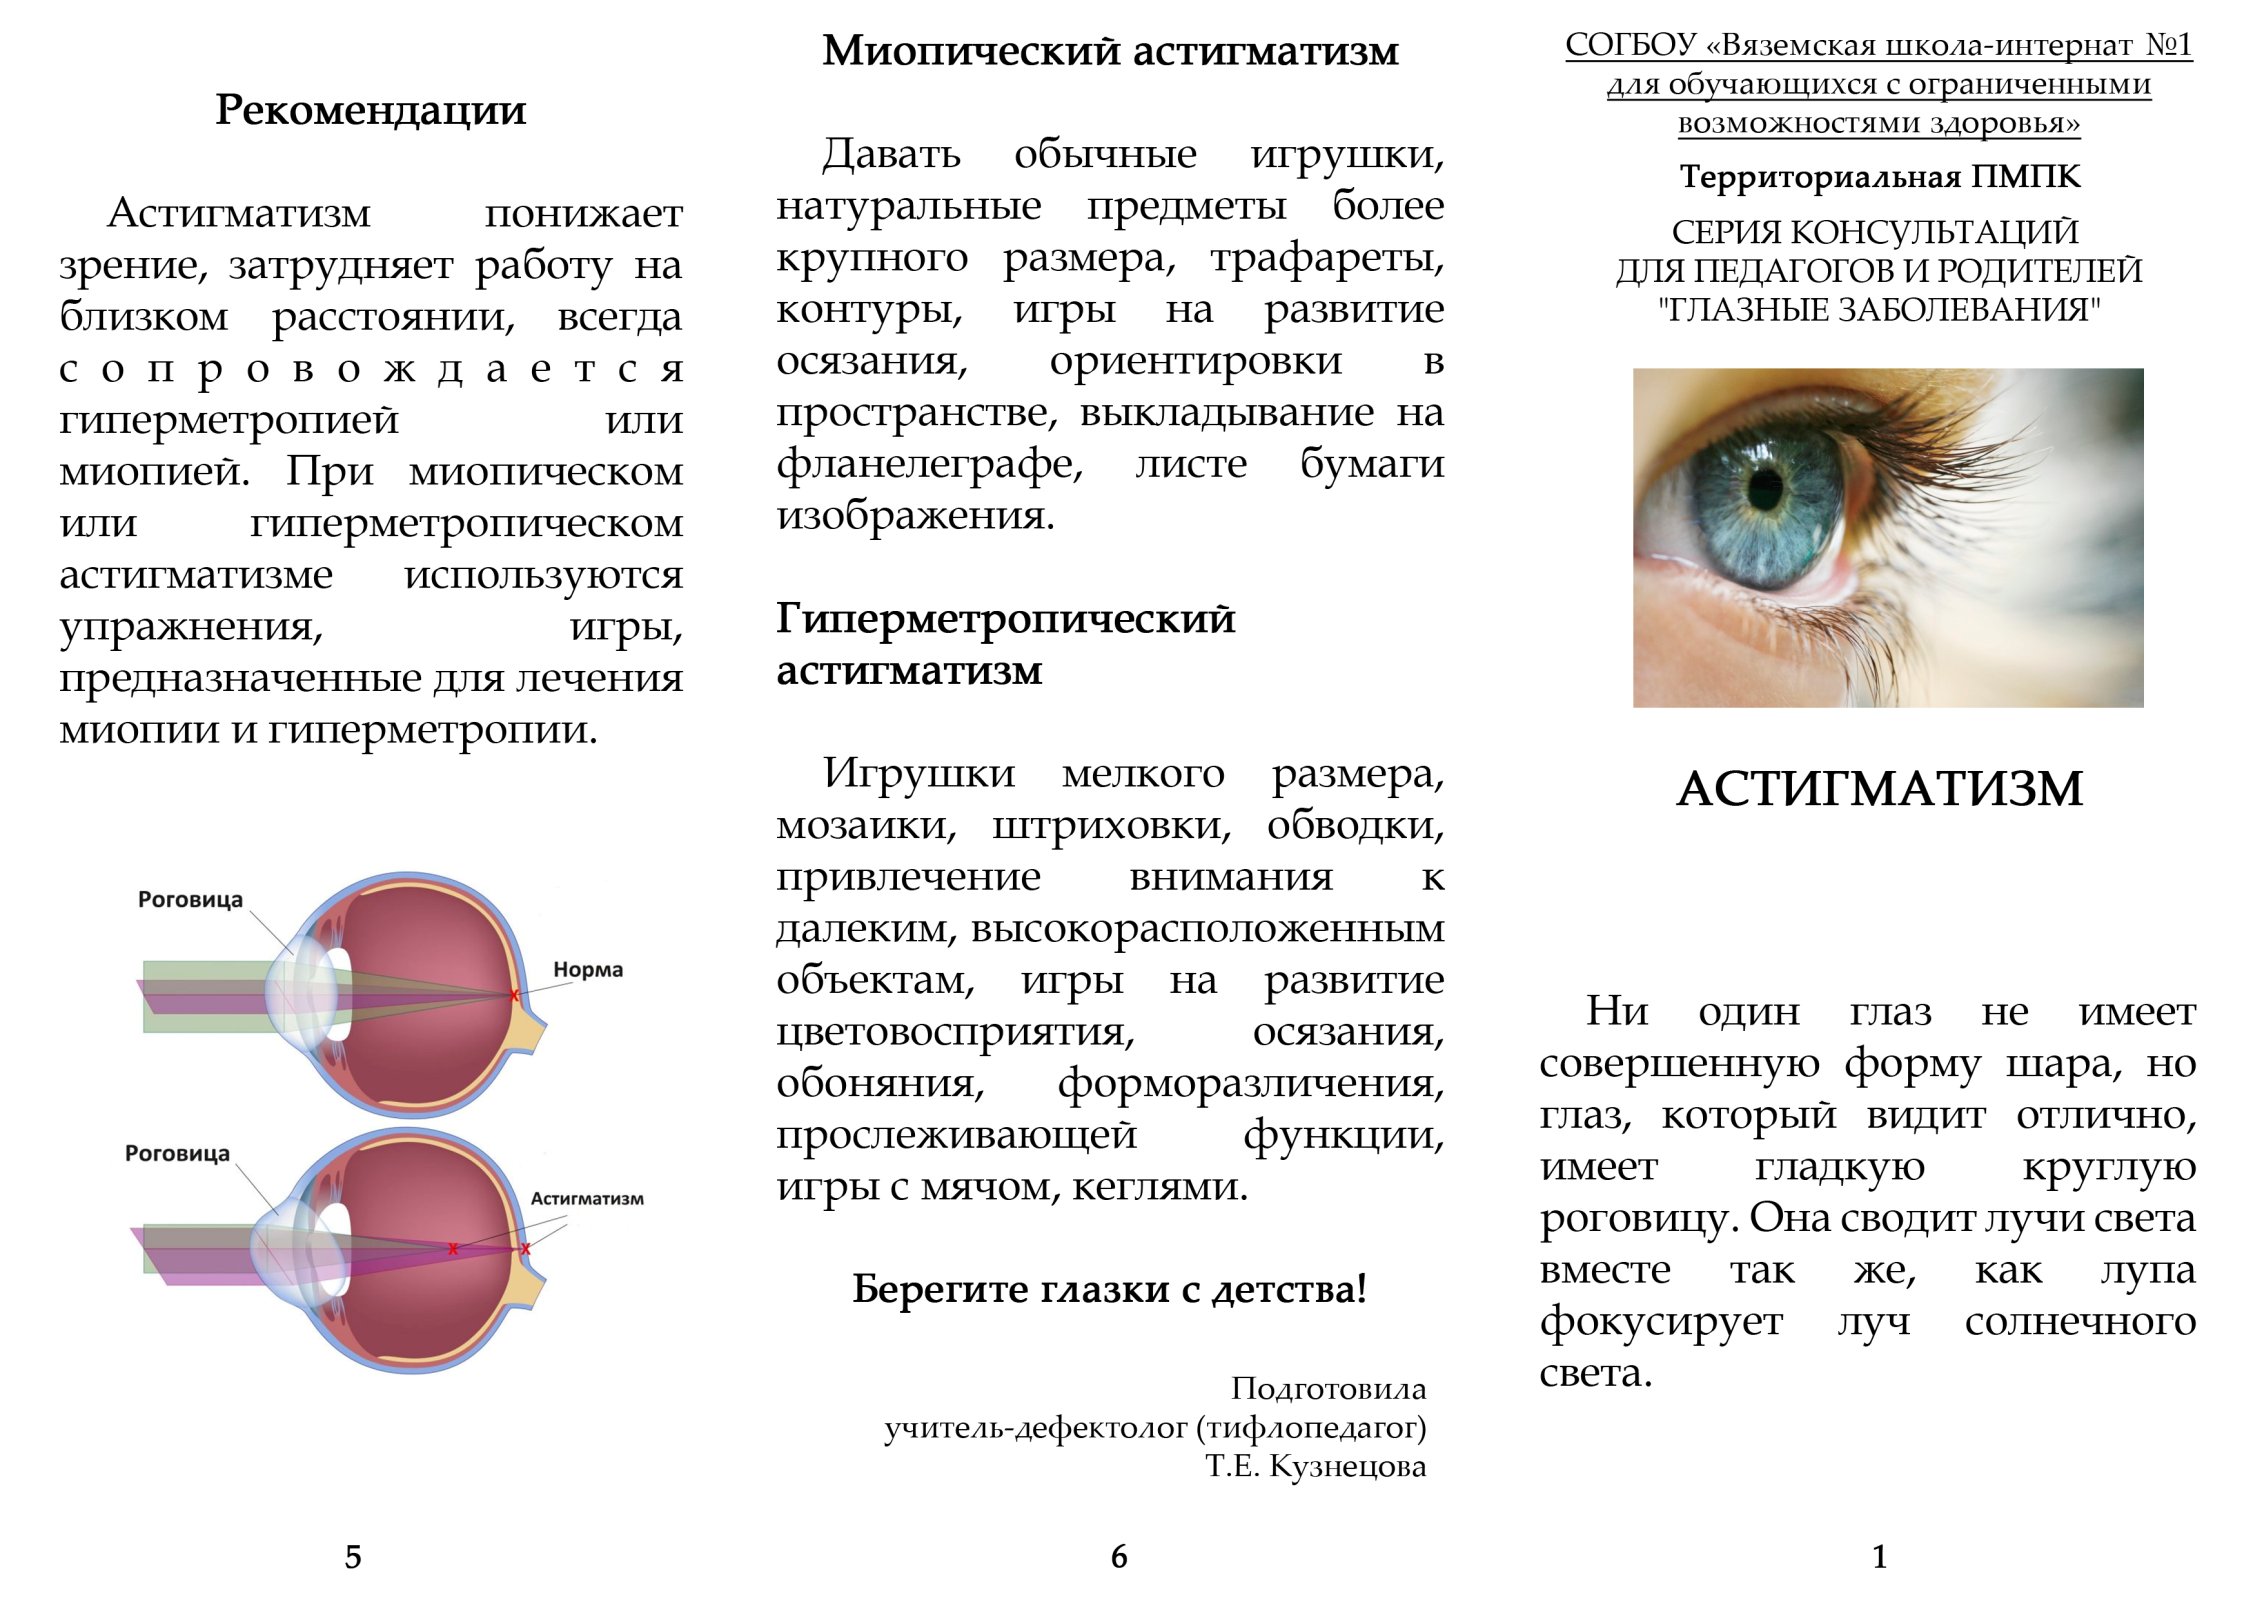 Аметропия: аметропия, что это такое, симптомы, диагностика и лечение — глаза эксперт